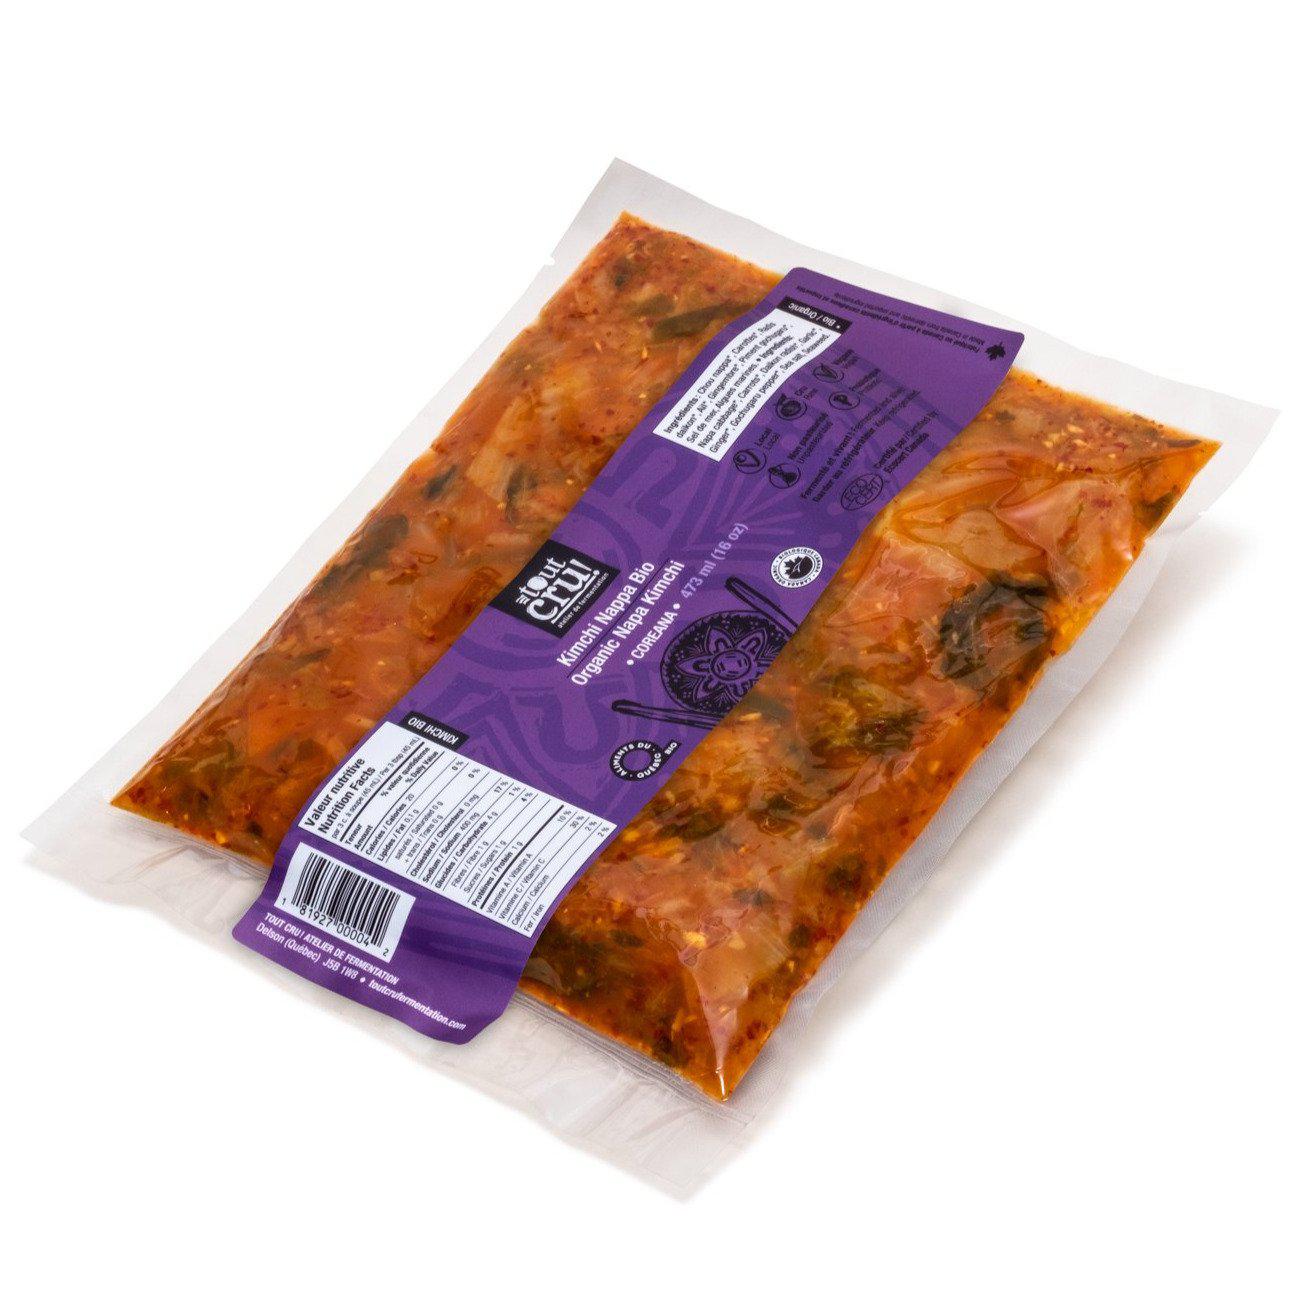 Organic Kimchi Nappa- Coreana - Tout cru! Fermentation